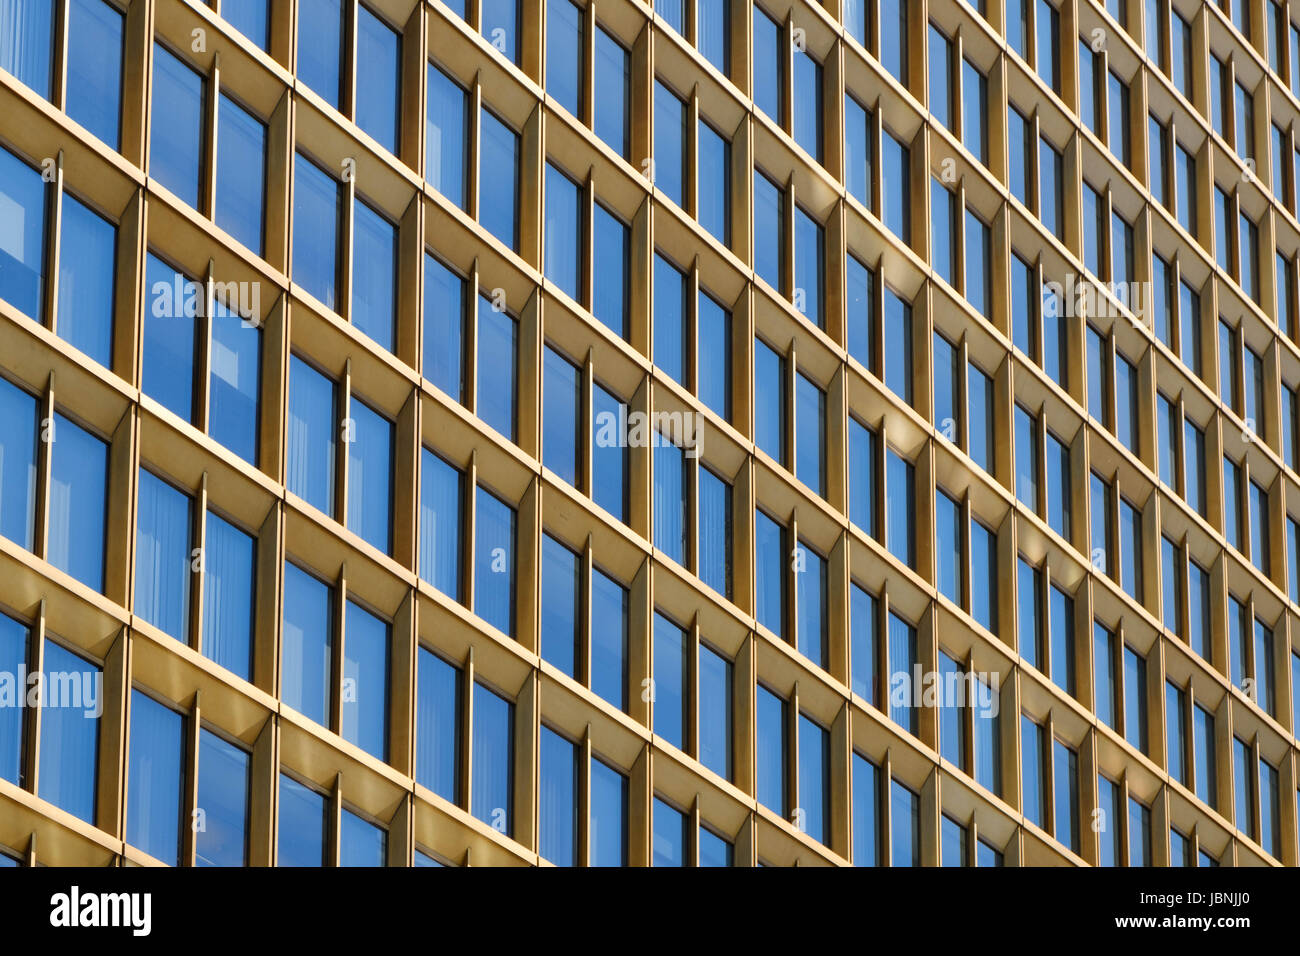 Wolkenkratzer, Gebäude außen - Fenster-Fassade / architektonische Muster Stockfoto